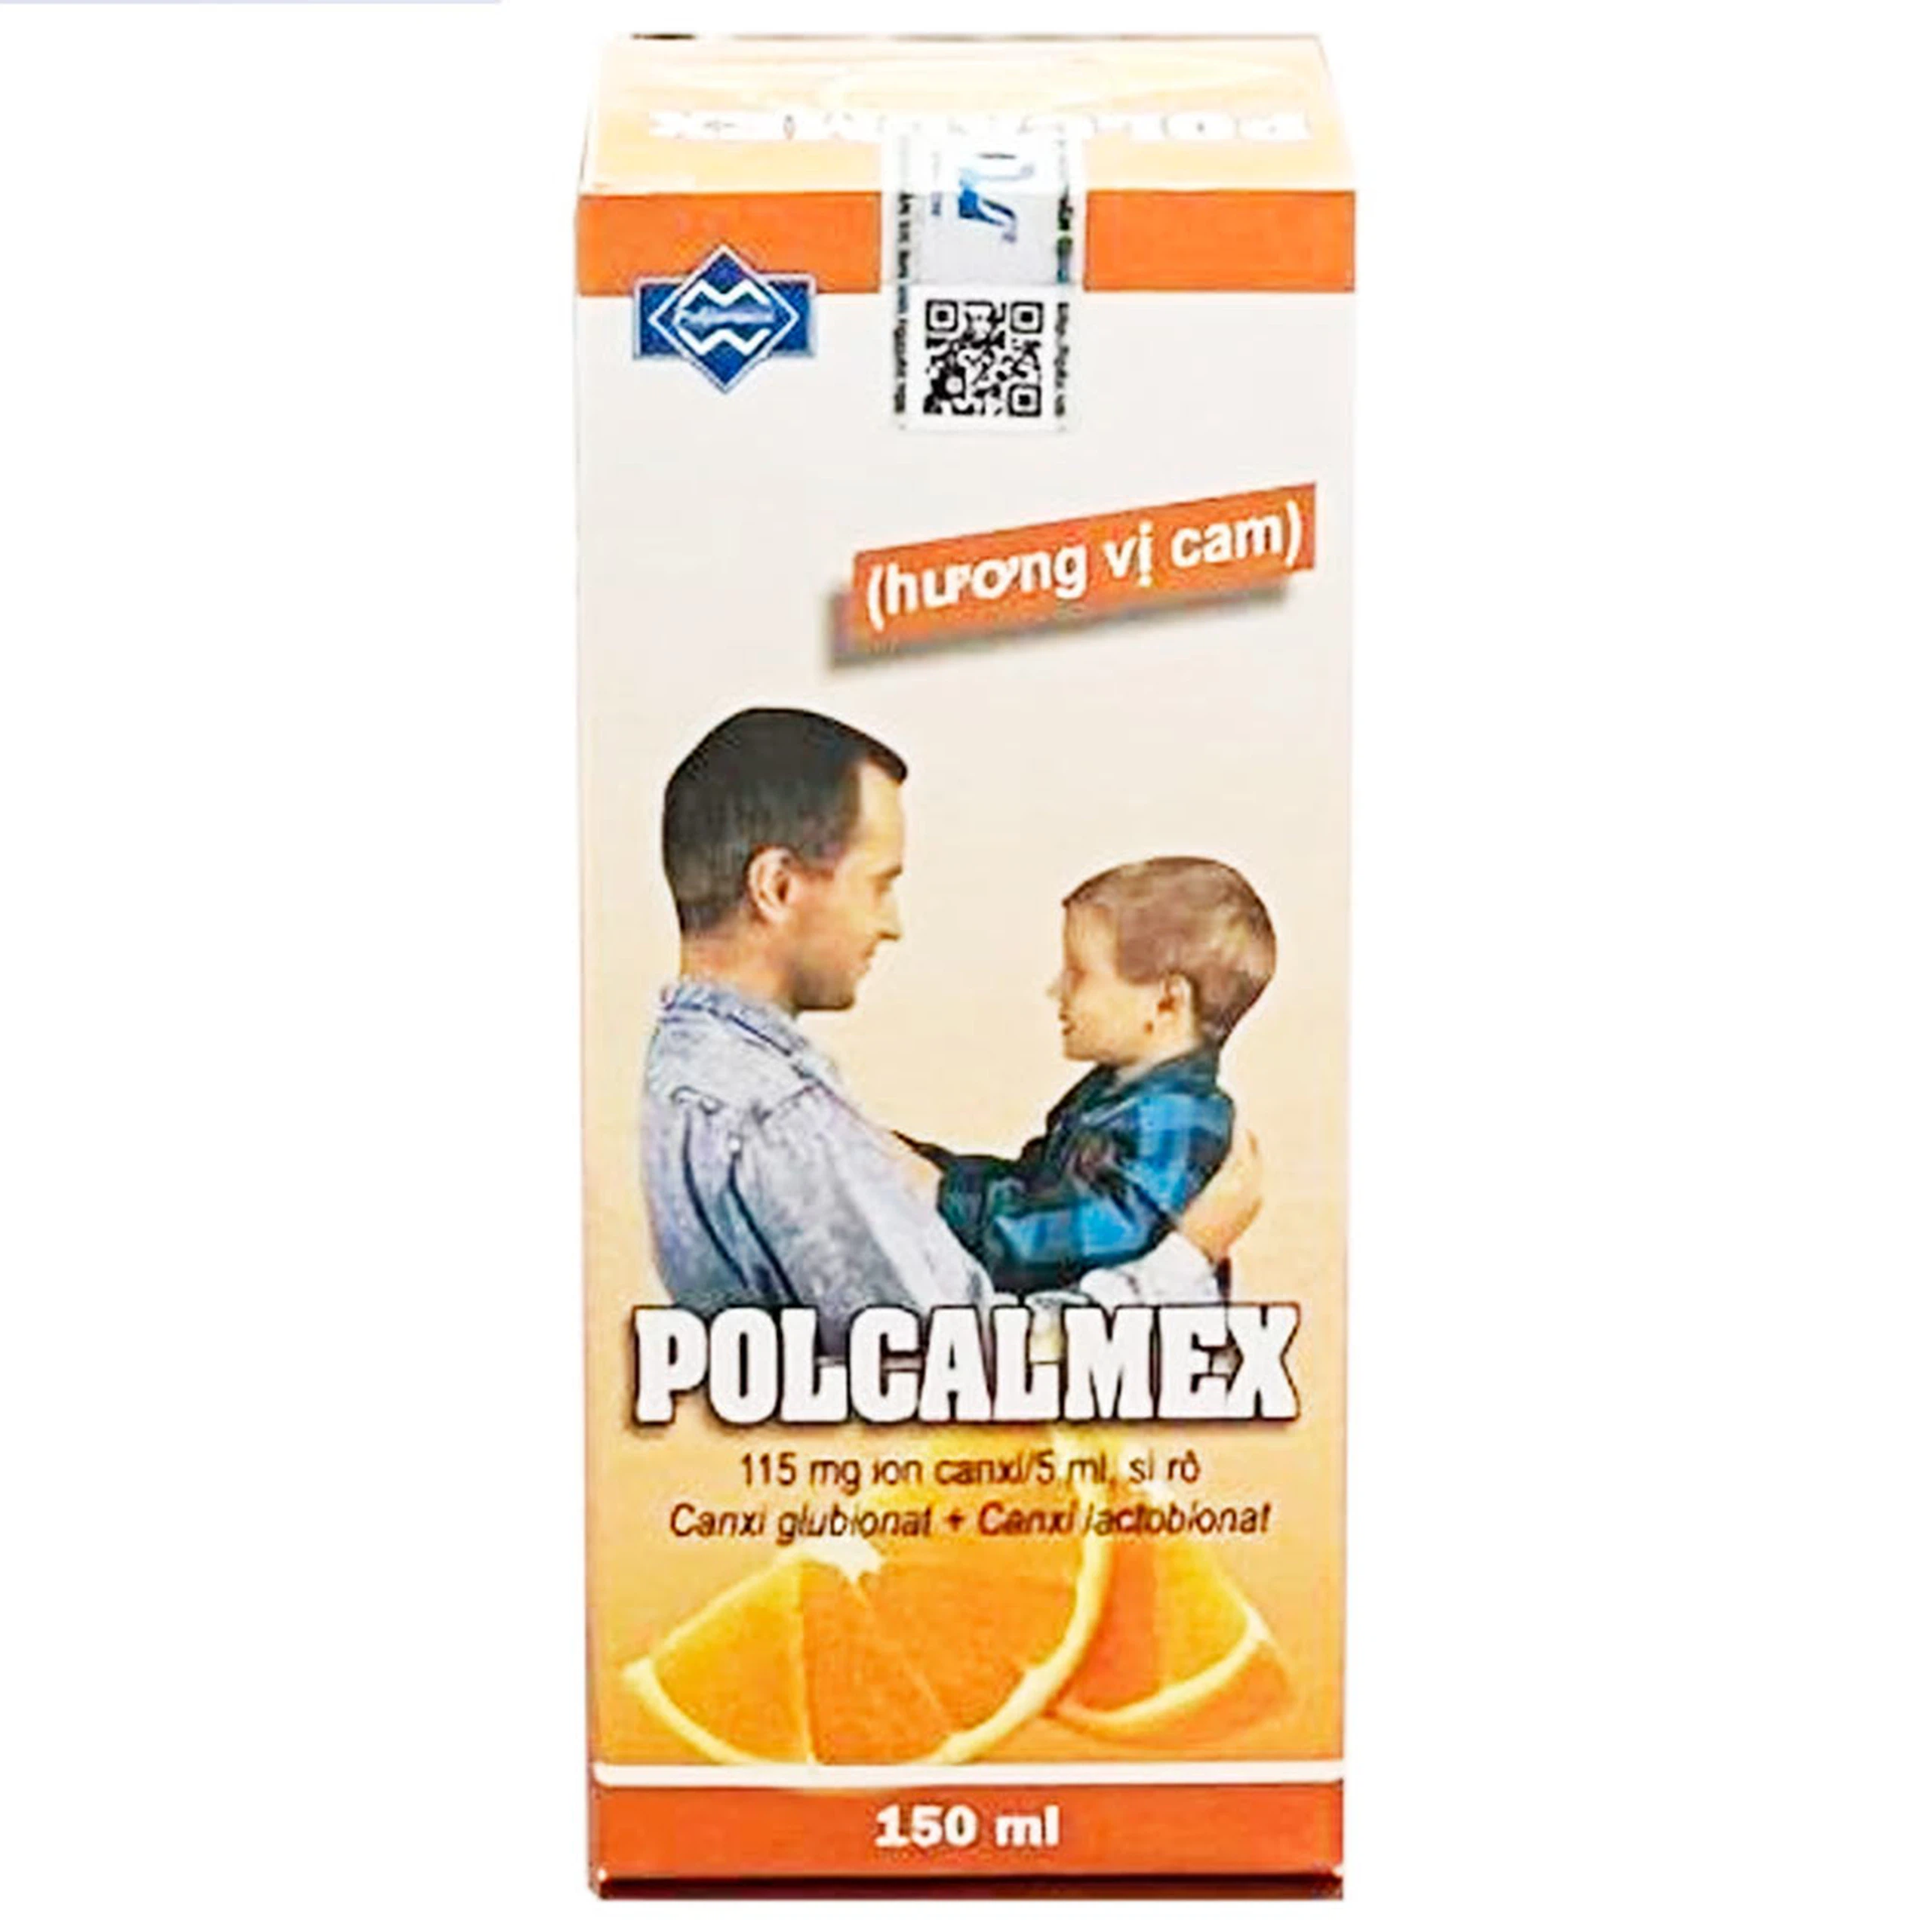 Siro Polcalmex Polfarmex vị cam - phòng và điều trị thiếu canxi (150ml)